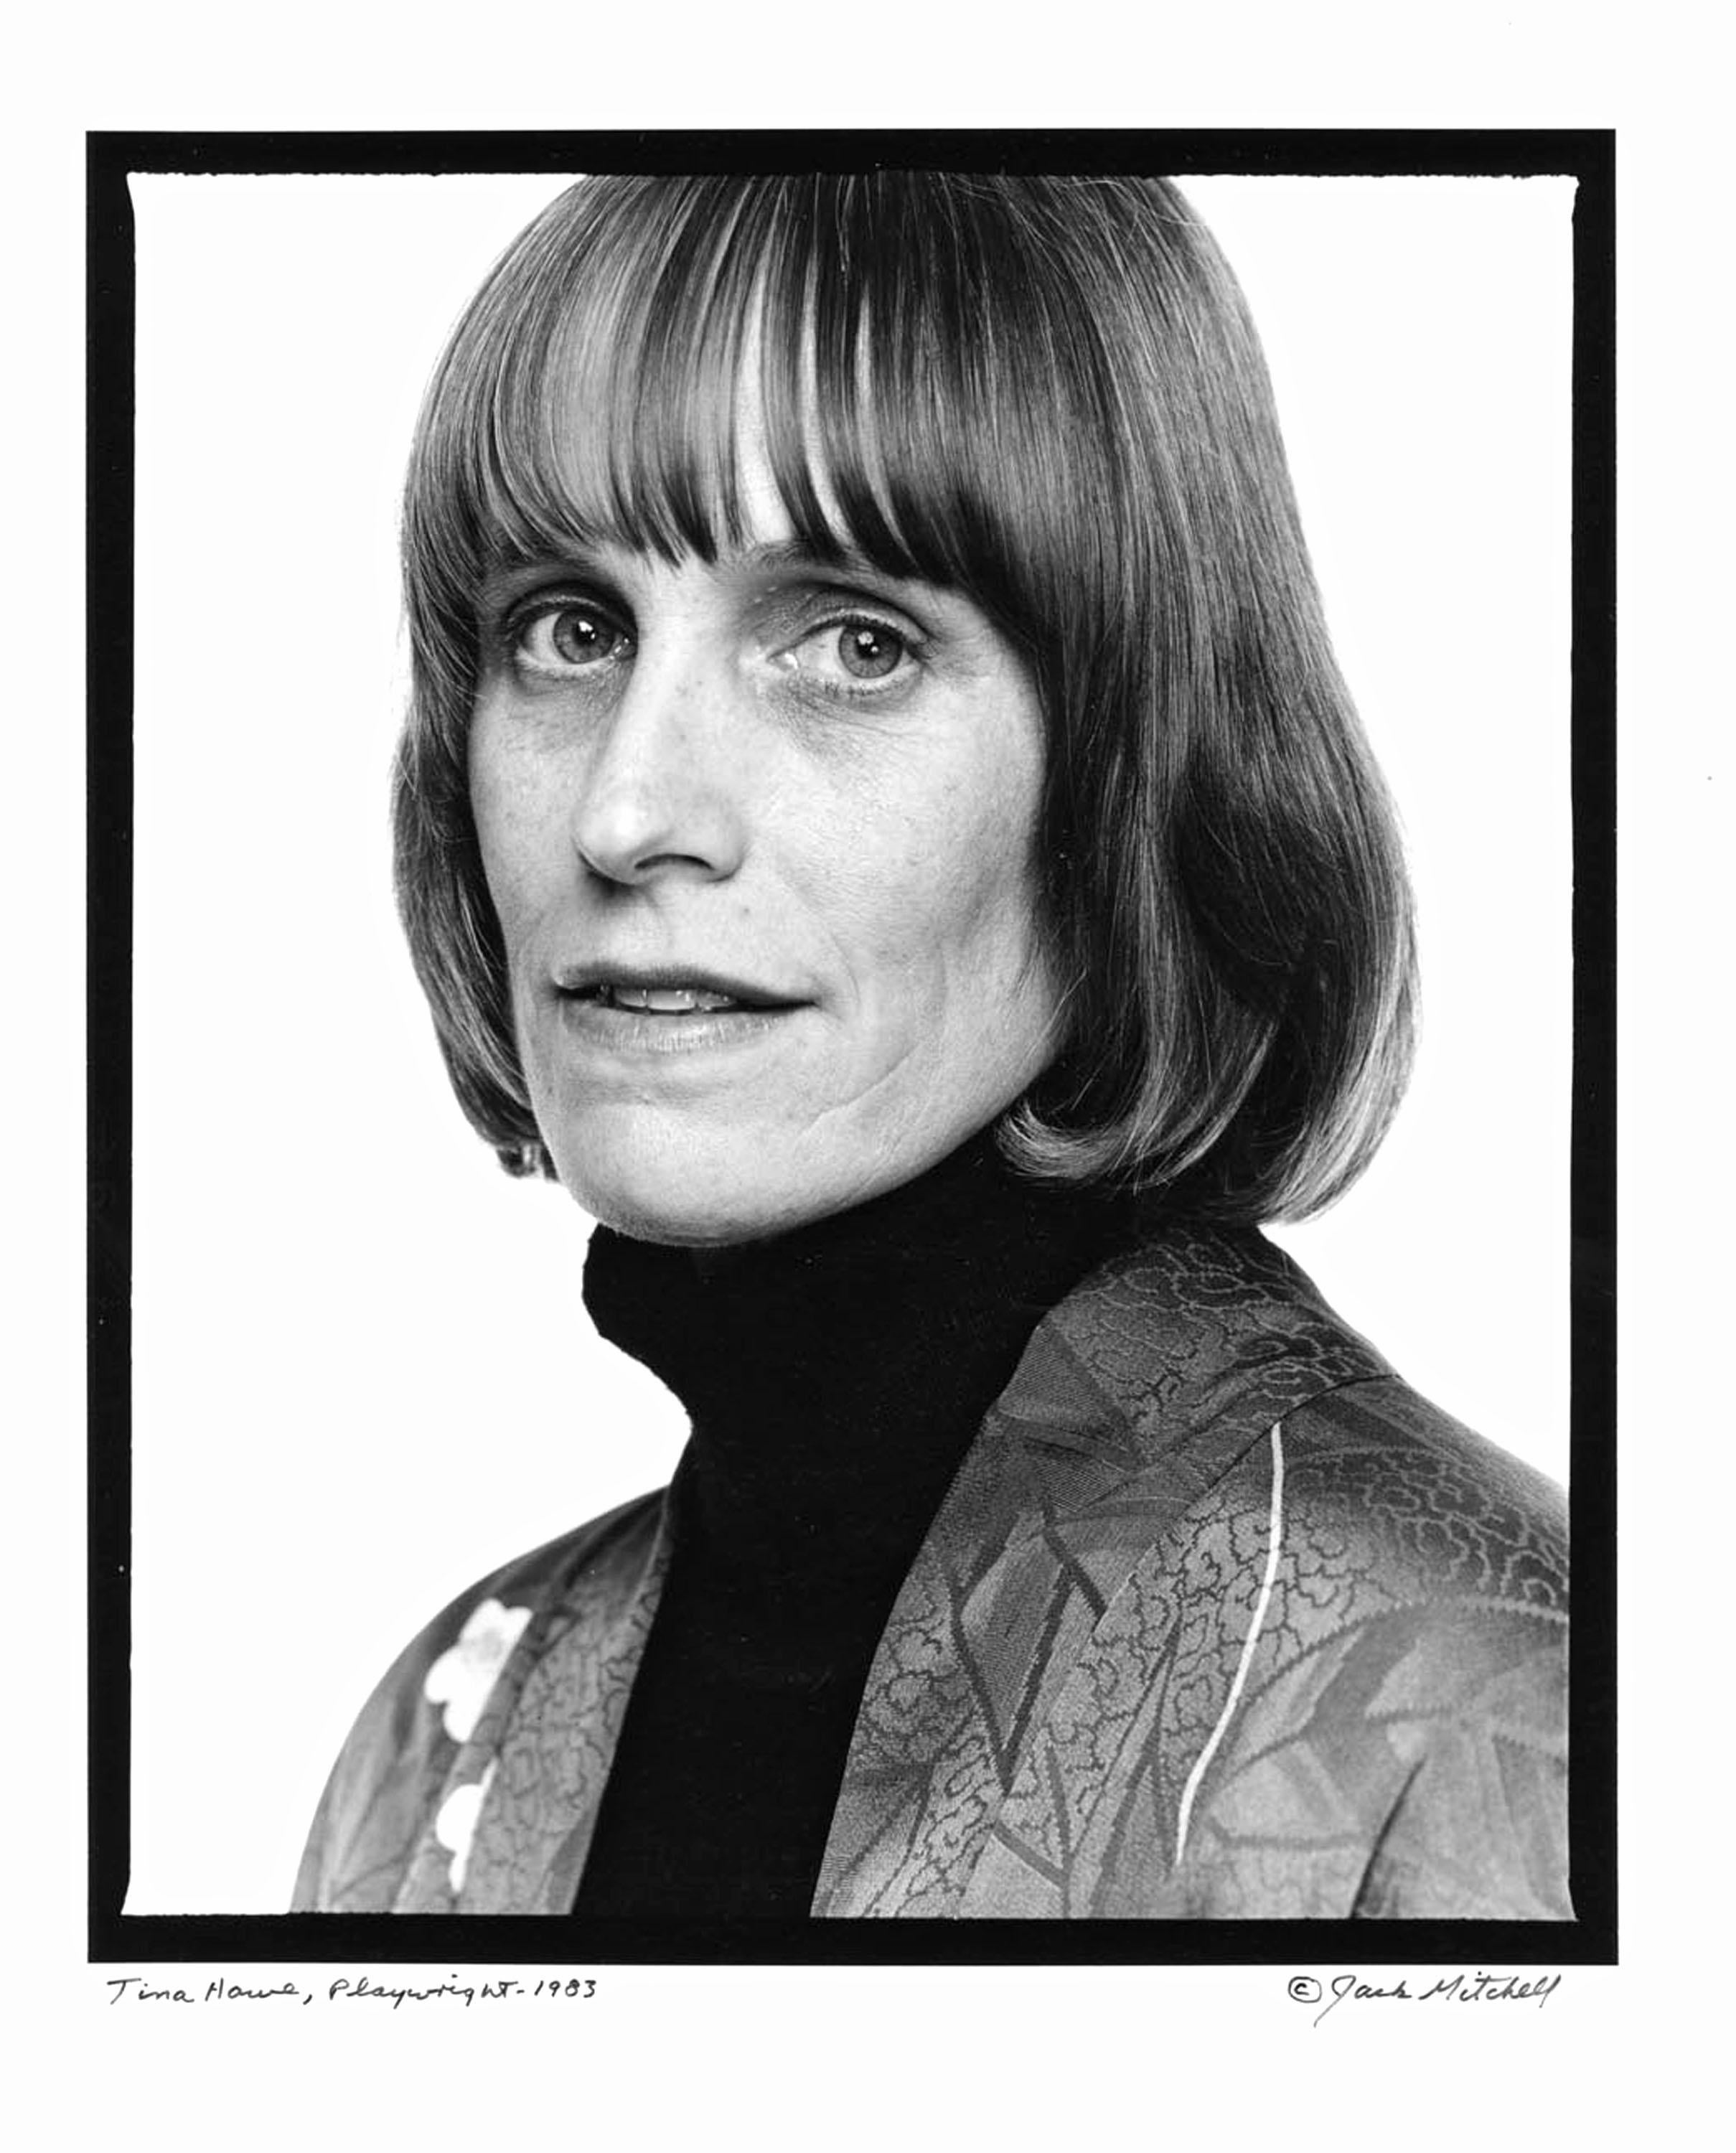 11 x 14" altes Silbergelatine-Foto der Dramatikerin Tina Howe, fotografiert 1983 in NYC. Signiert von Jack Mitchell auf der Vorderseite des Drucks. Kommt direkt aus dem Jack Mitchell Archiv mit einem Echtheitszertifikat.

 Jack Mitchells (1925-2013)